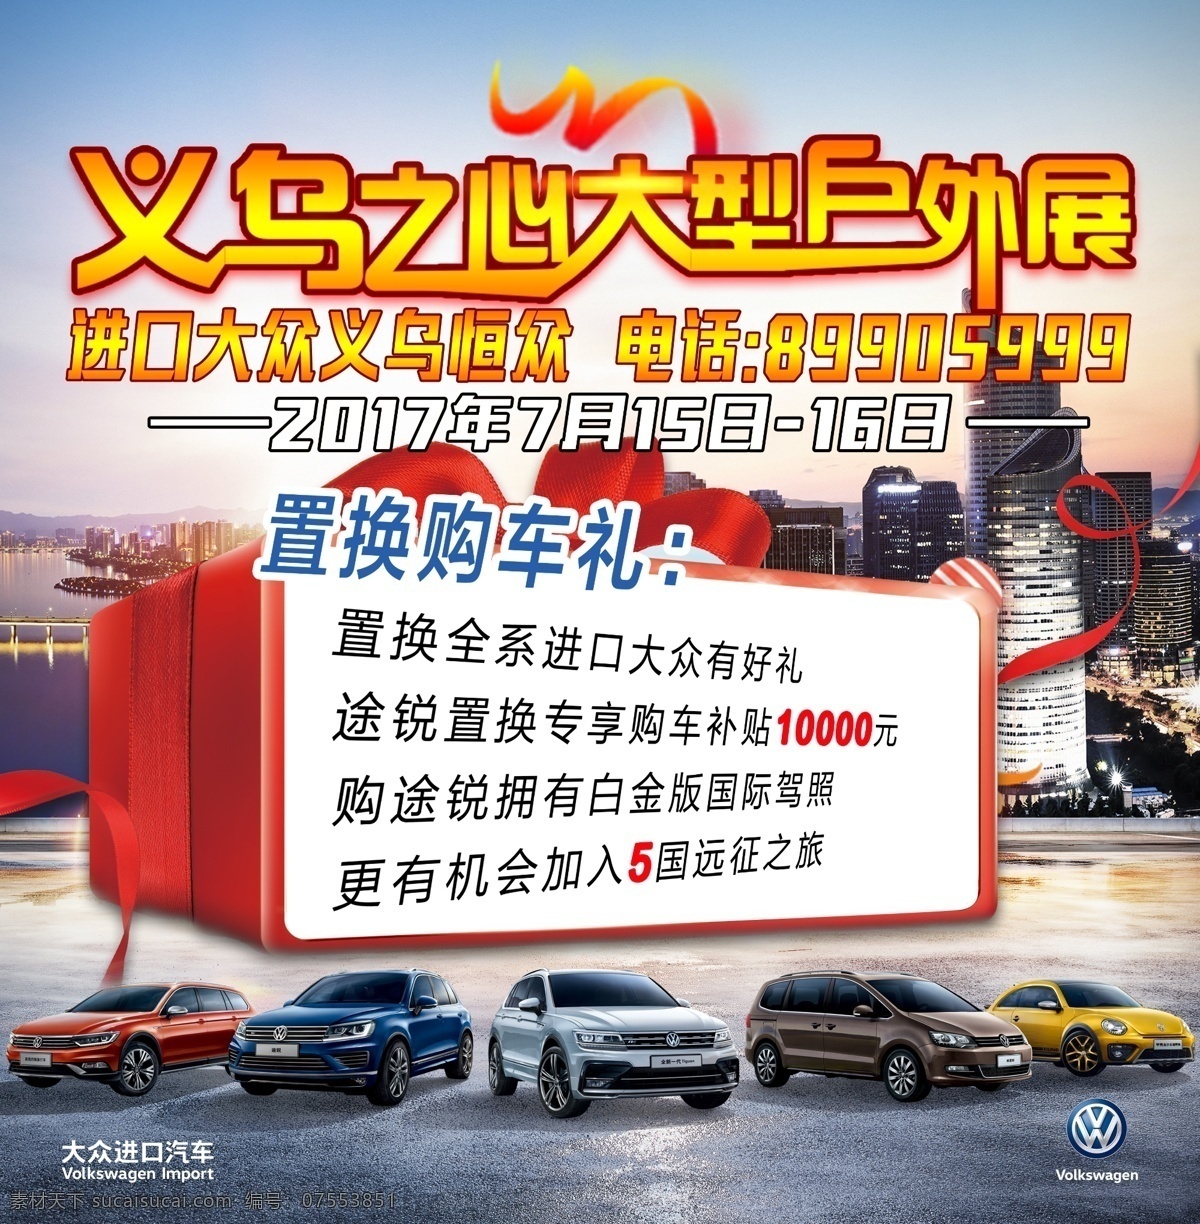 大众 进口大众 外展 礼品 汽车 背景 置换 海报 城市